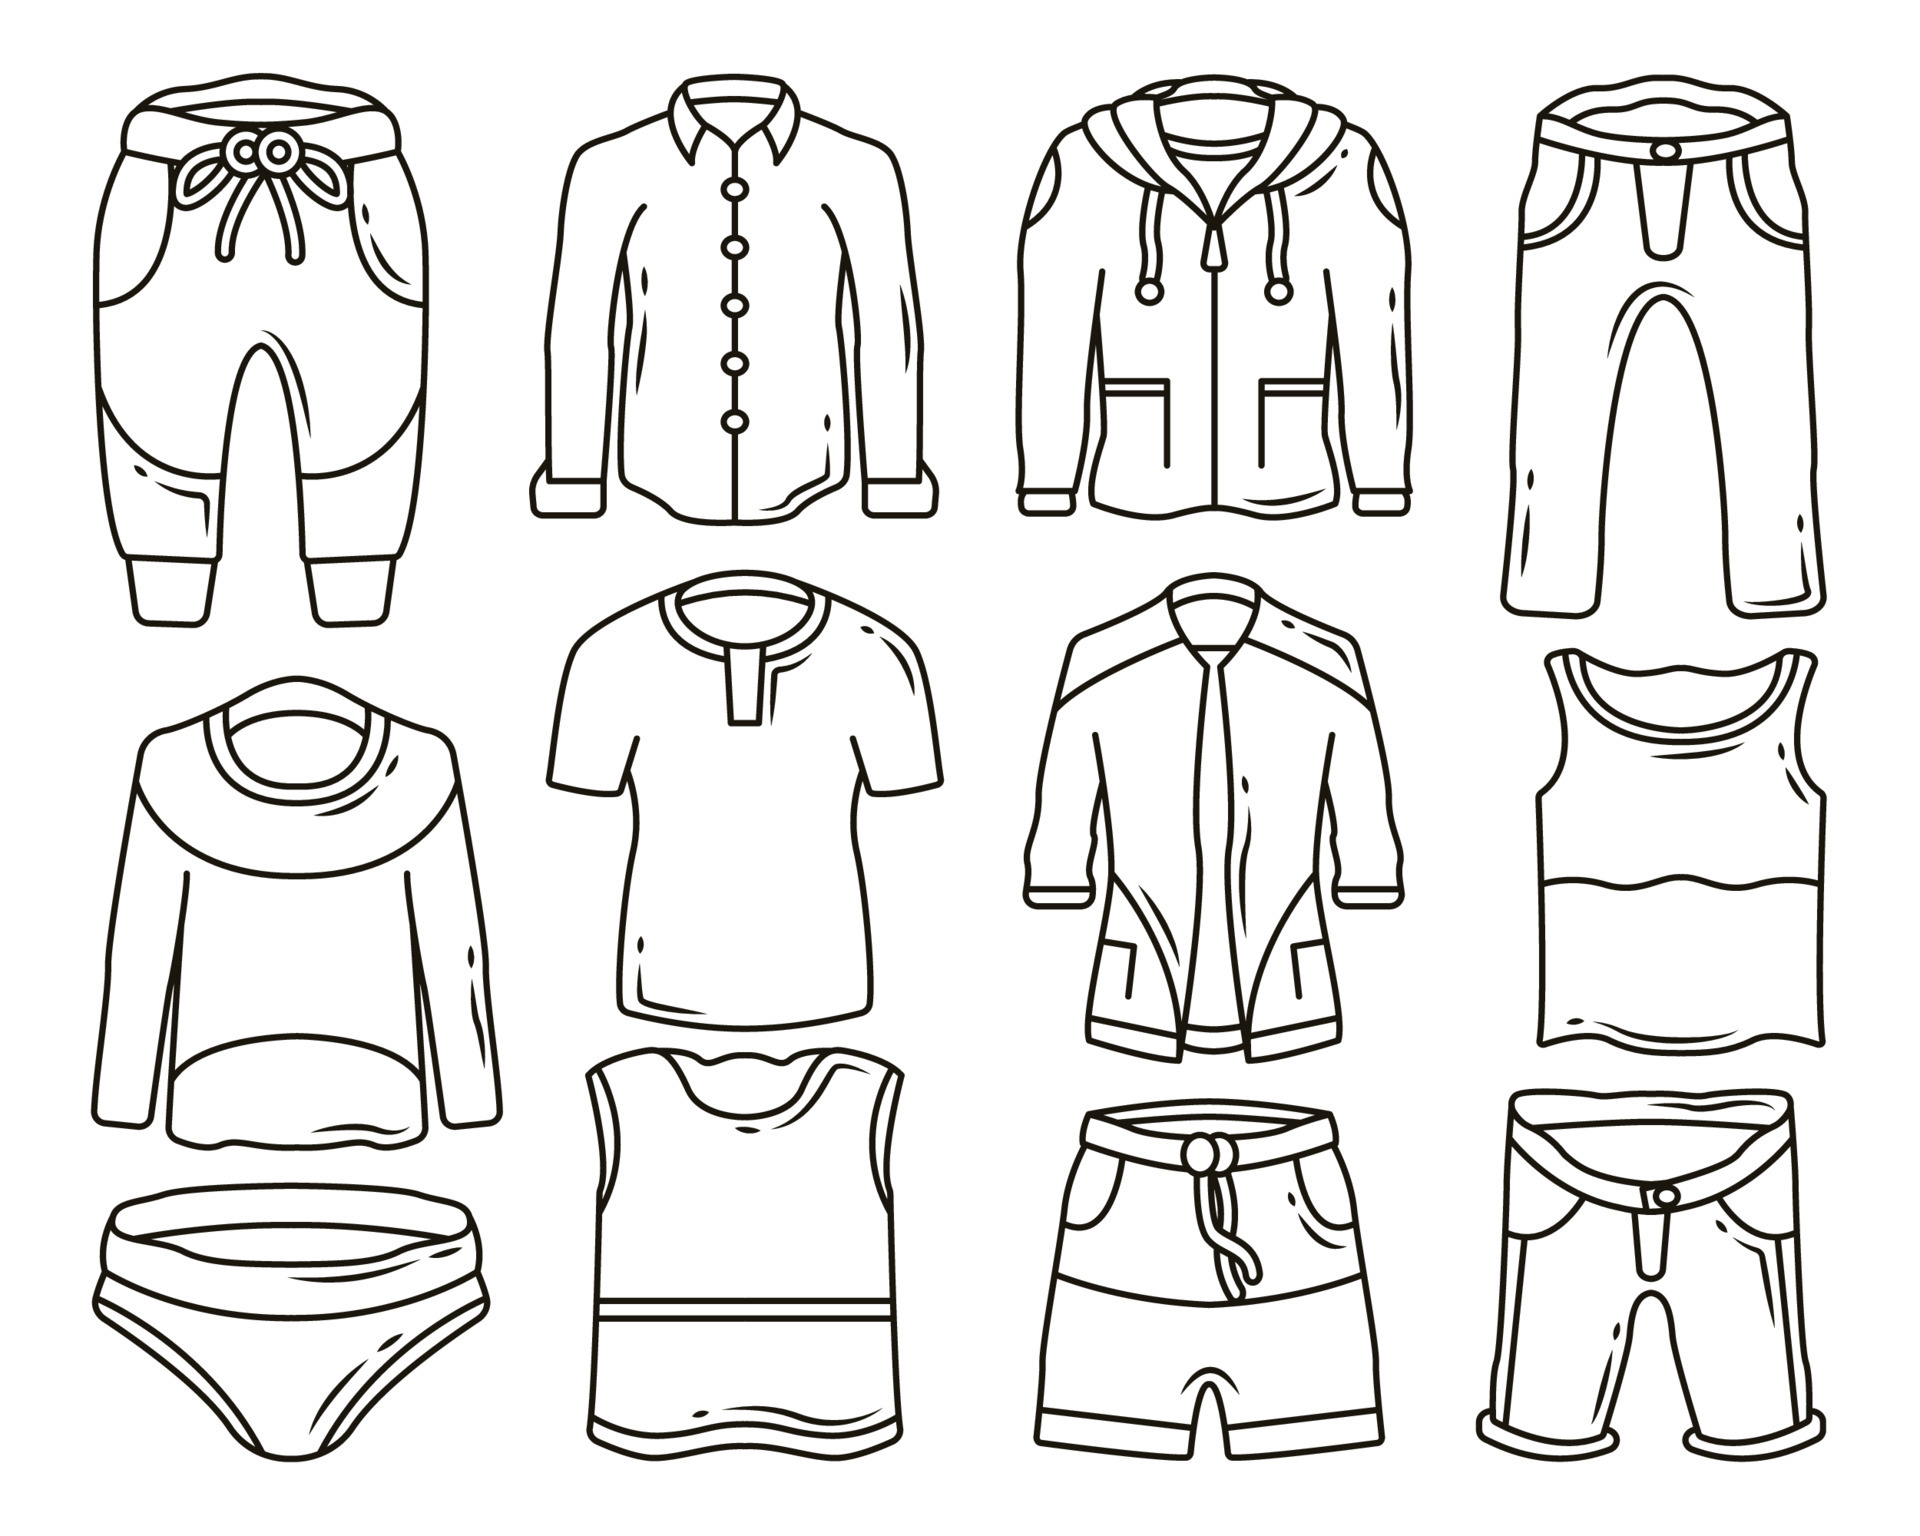 https://static.vecteezy.com/ti/vetor-gratis/p3/5303502-conjunto-de-roupas-masculinas-desenhadas-a-mao-e-calcas-para-colorir-desenho-de-desenho-animado-gratis-vetor.jpg